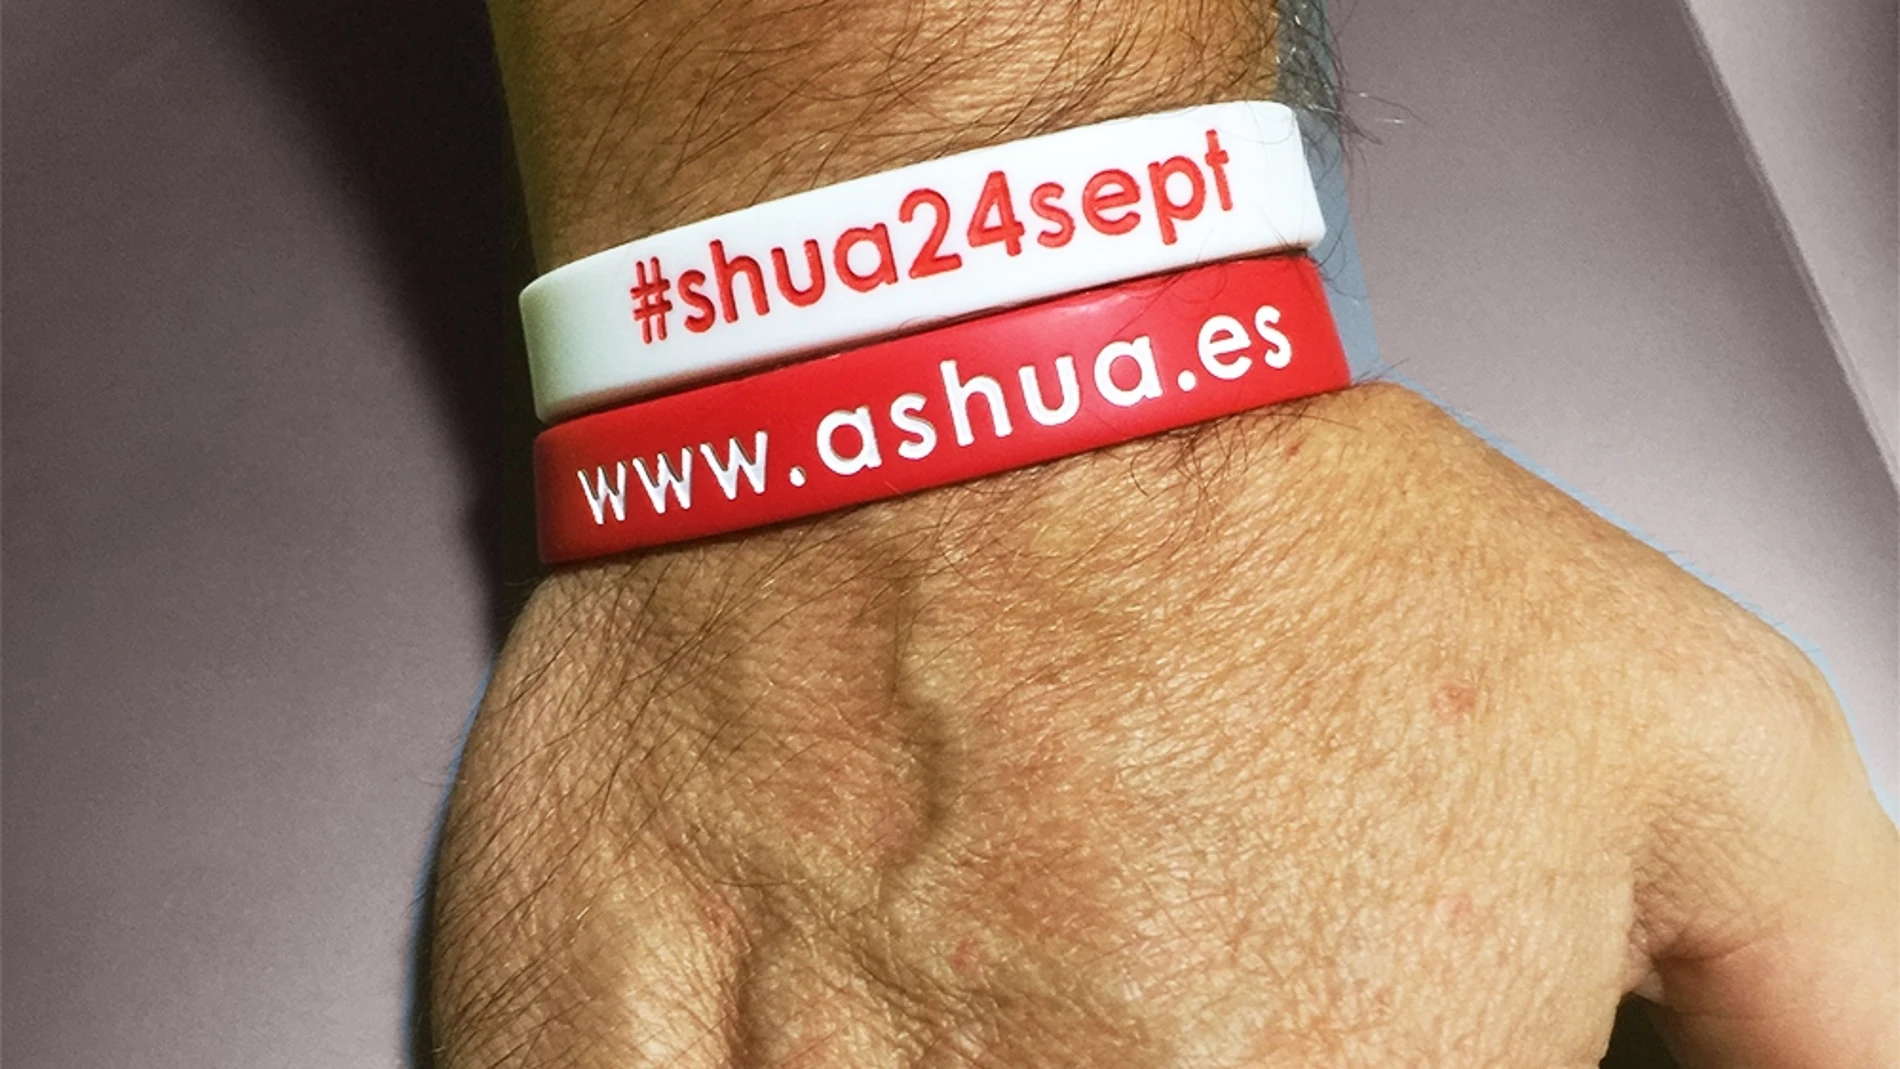 La asociación Ashua ha creado estas pulseras para dar visibilidad a una enfermedad todavía muy desconocida